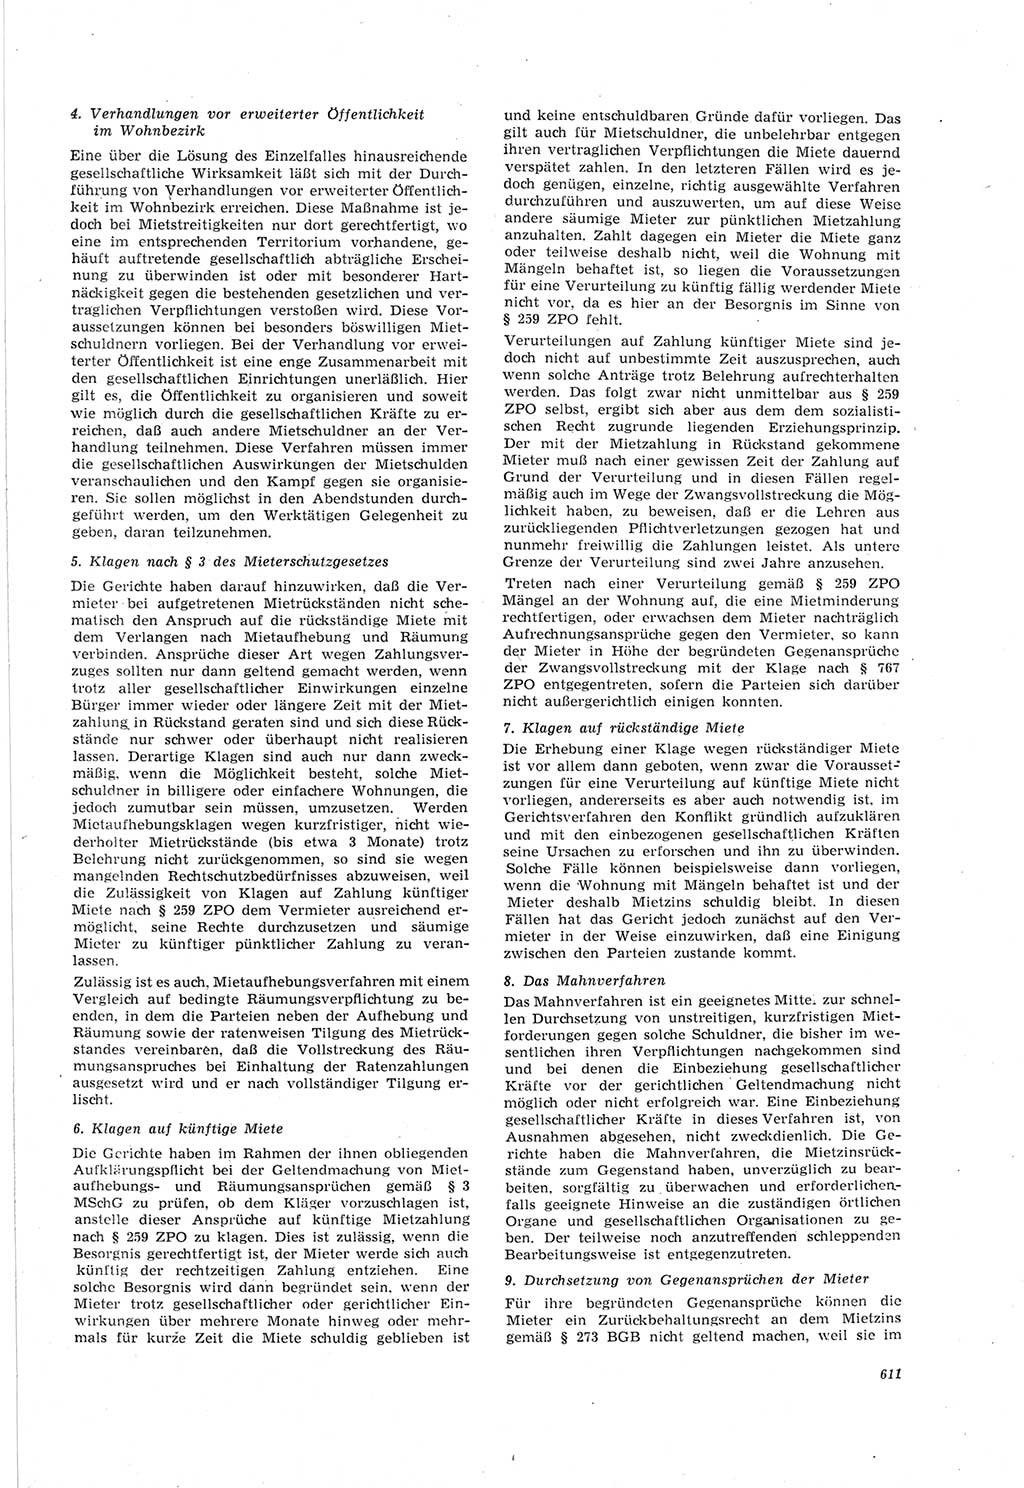 Neue Justiz (NJ), Zeitschrift für Recht und Rechtswissenschaft [Deutsche Demokratische Republik (DDR)], 18. Jahrgang 1964, Seite 611 (NJ DDR 1964, S. 611)